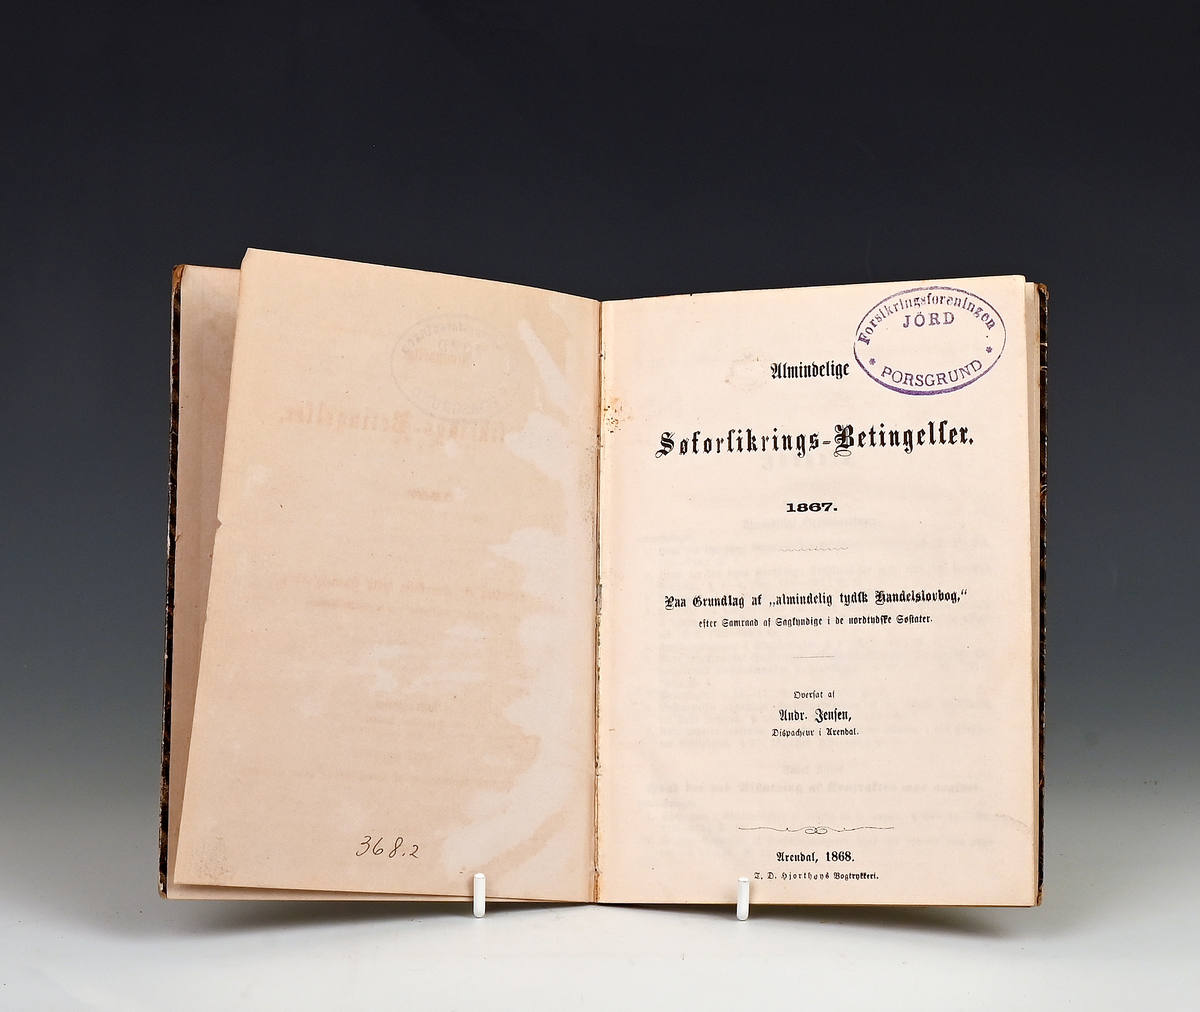 Prot: Almindelige Sjøforsikrings betingelser 1867. (Fra tysk) Overs af Andr. Jensen. Arendal 1868. 3 bl. 94 s. 8. Shirting.